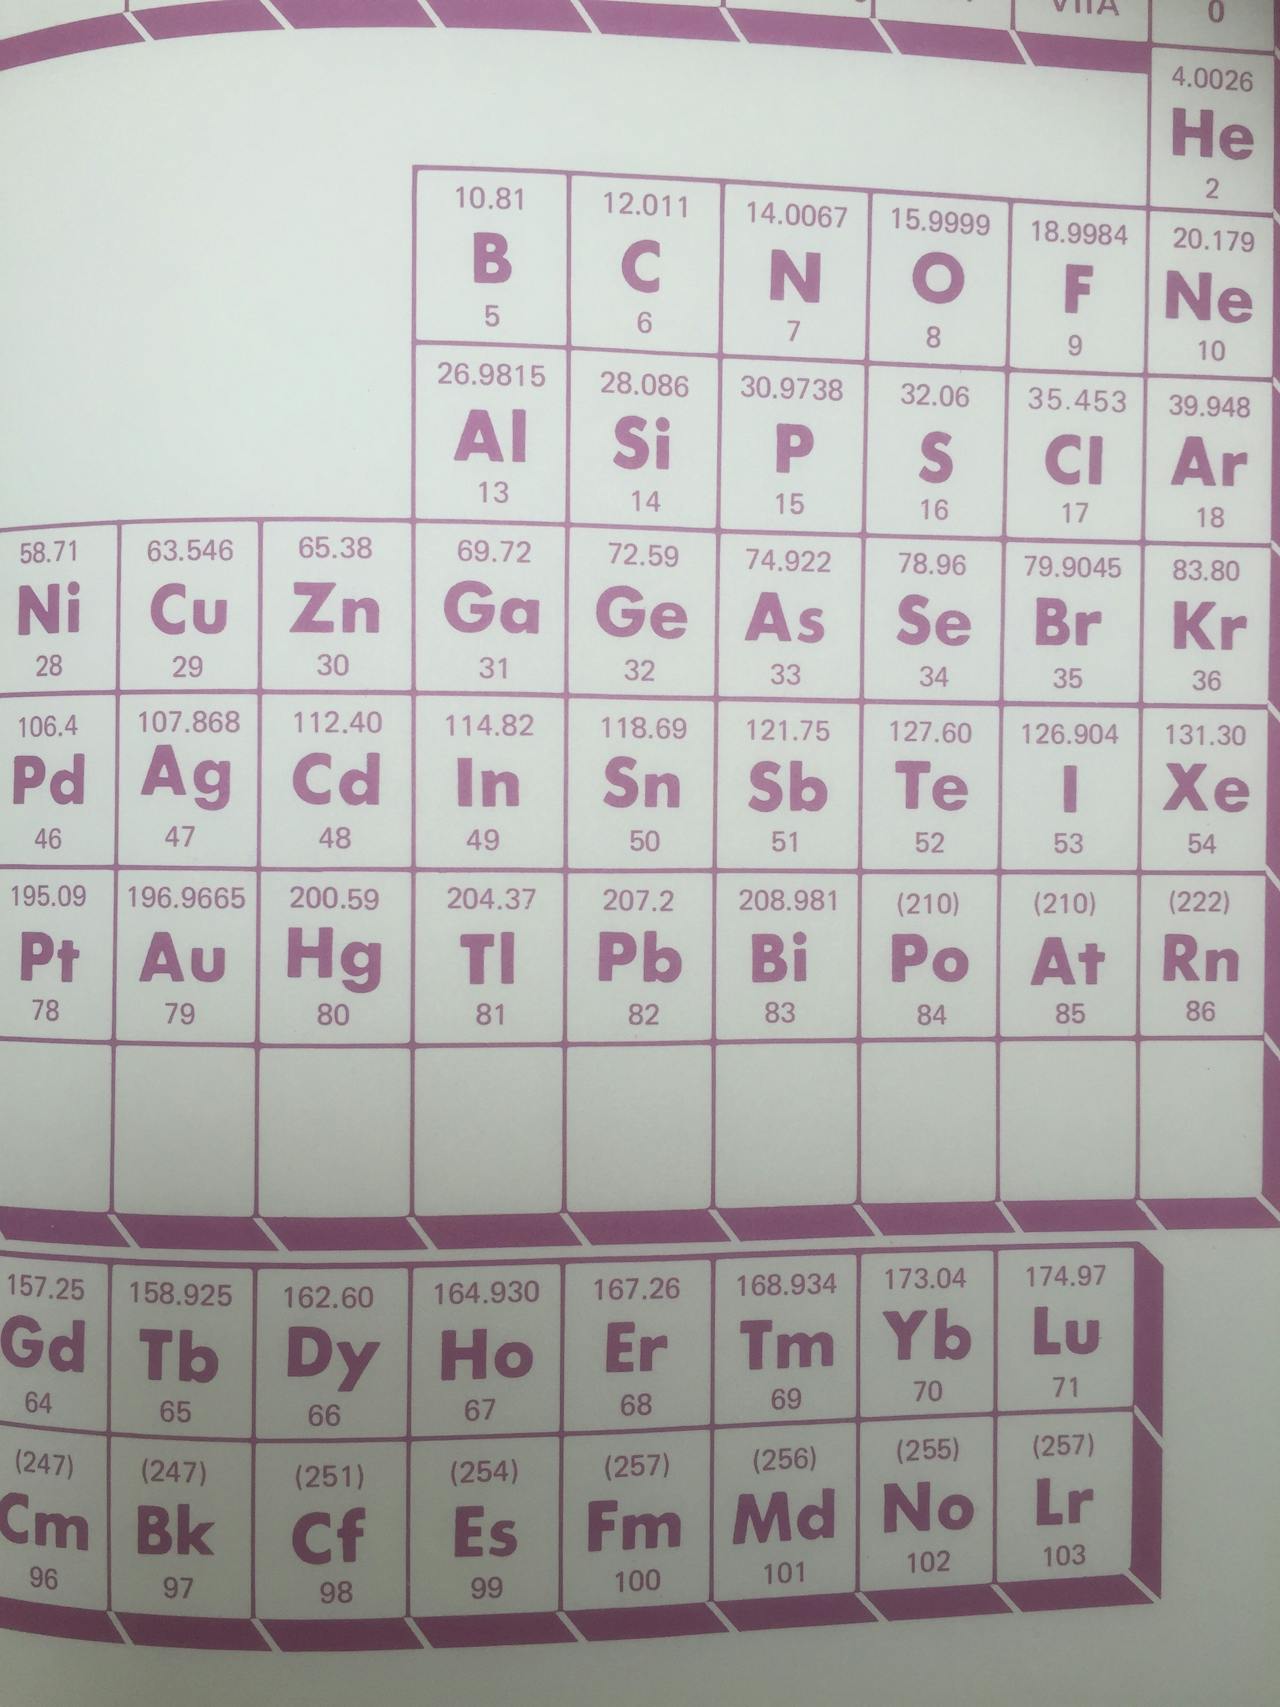 Het periodiek systeem (uit 1987) wordt weergegeven op een witte achtergrond.